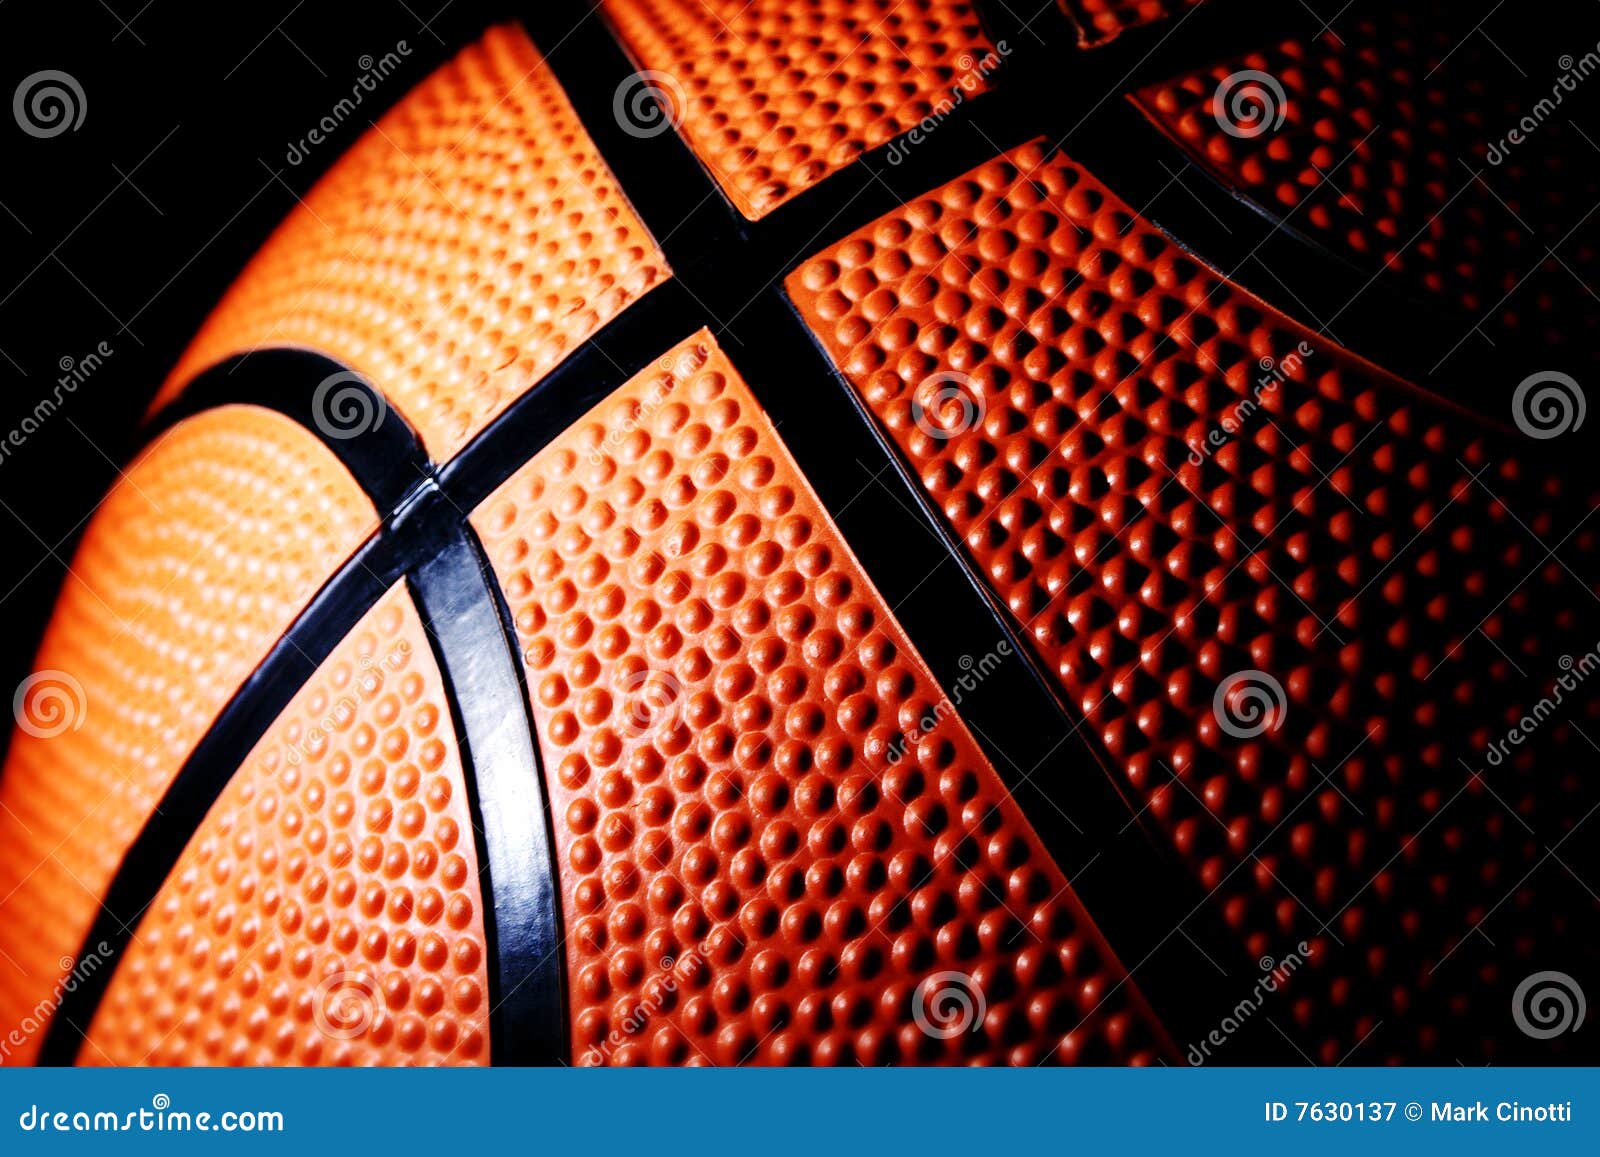 macro of a basketball